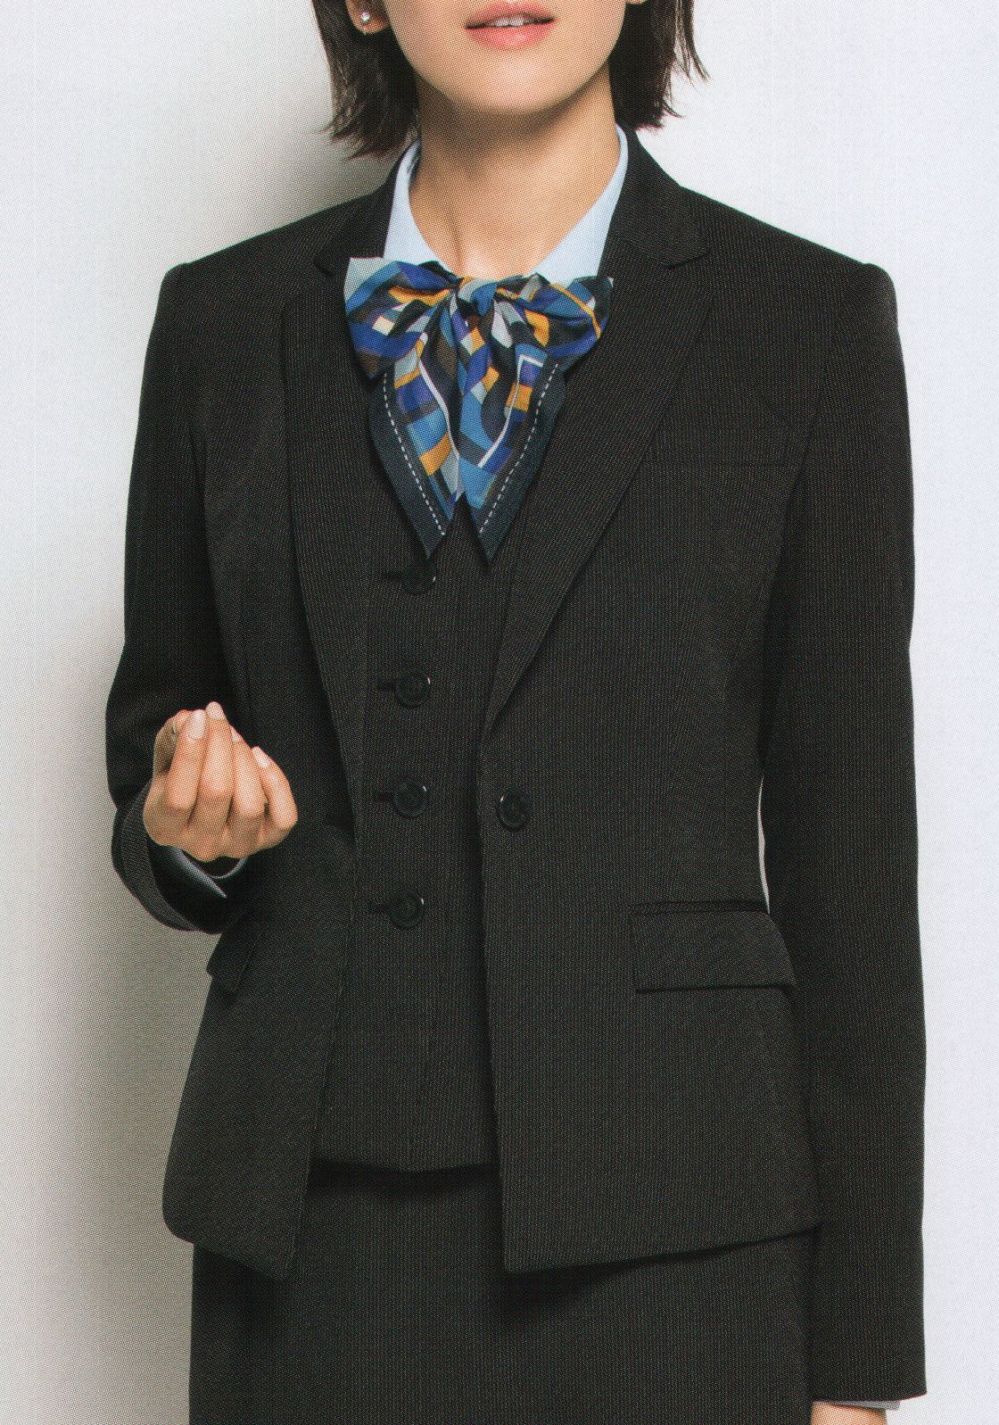 NEW売り切れる前に☆ 事務服セット ベスト S-04290 Ａラインスカート S-16810 レインストライプ セロリー 